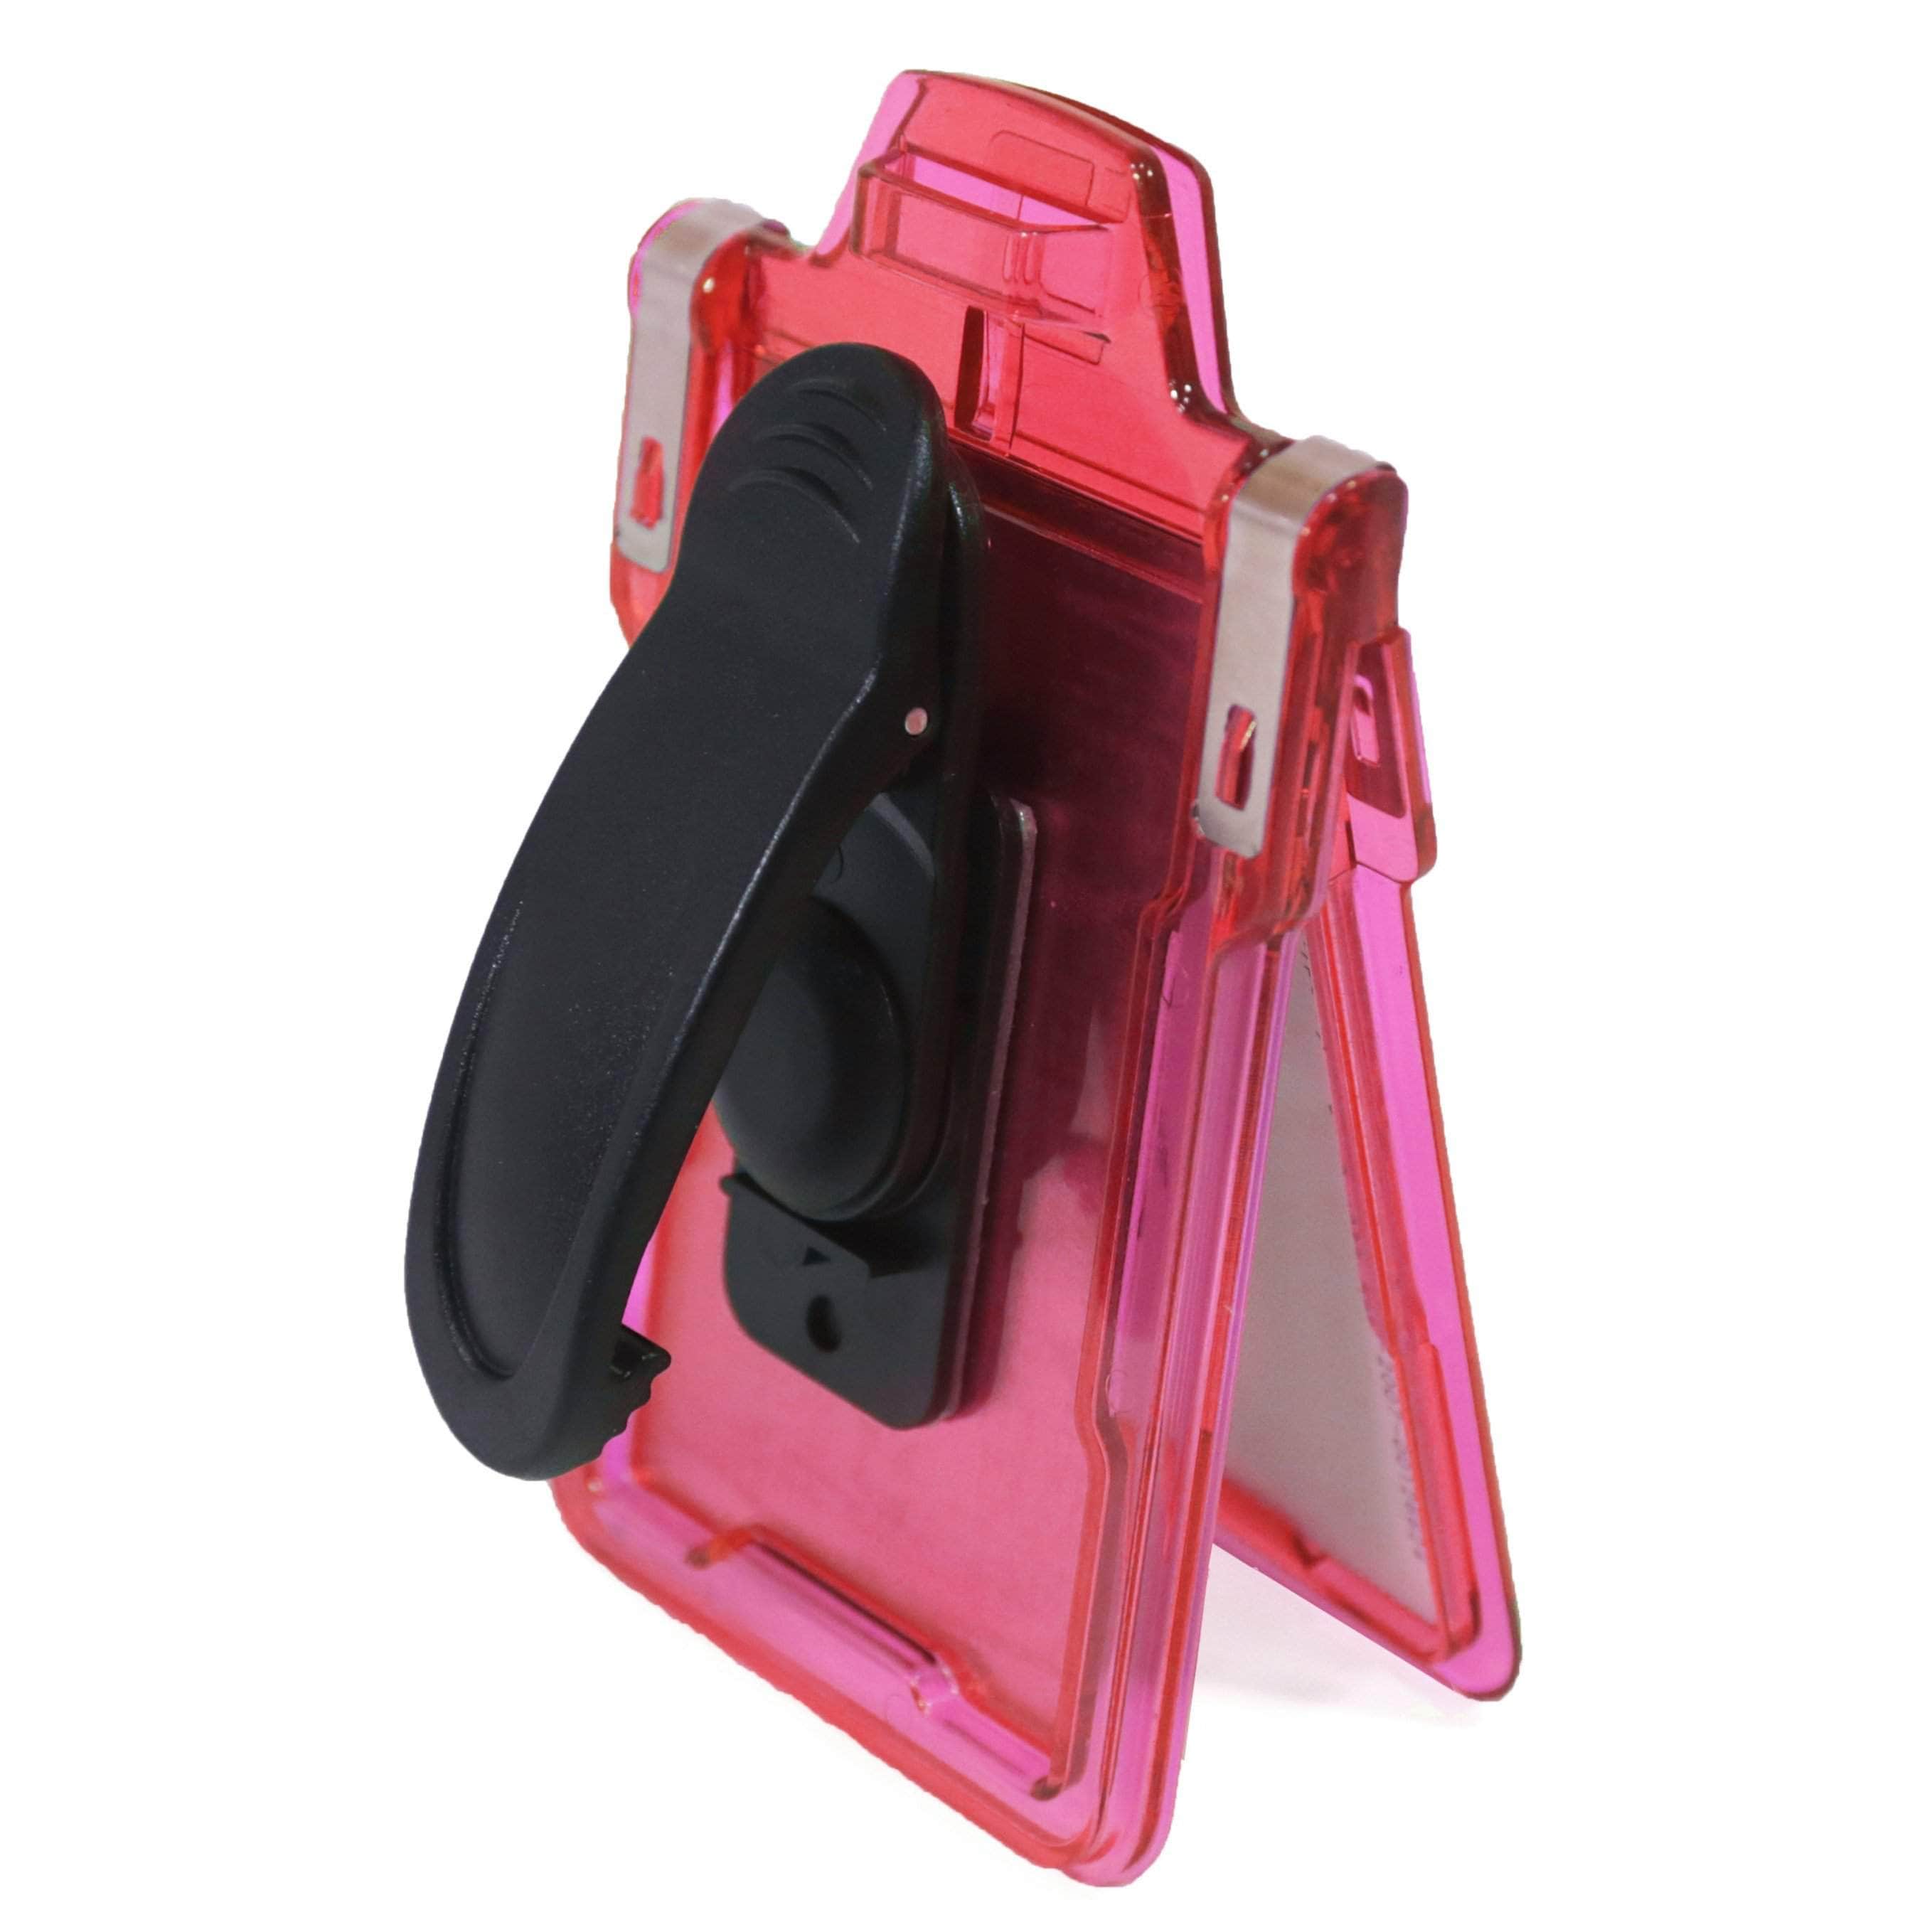 ID Stronghold Badgeholder Pink Secure Badge Holder Classic Vertical 1 Card Holder With Belt Clip